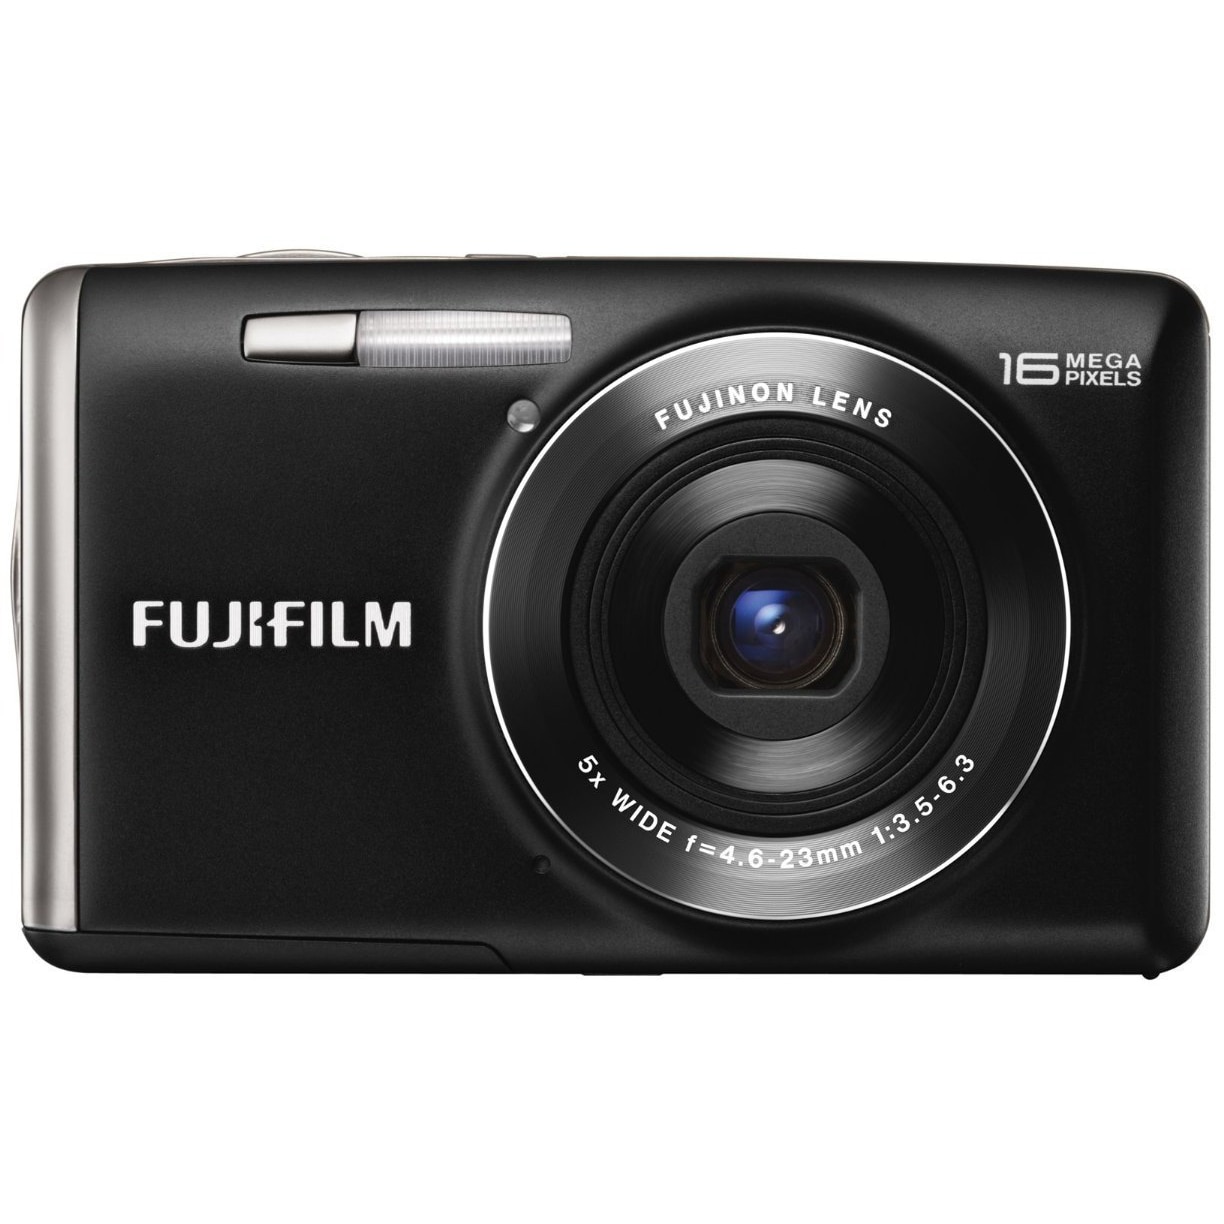 FUJIFILM Finepix JX700 - デジタルカメラ